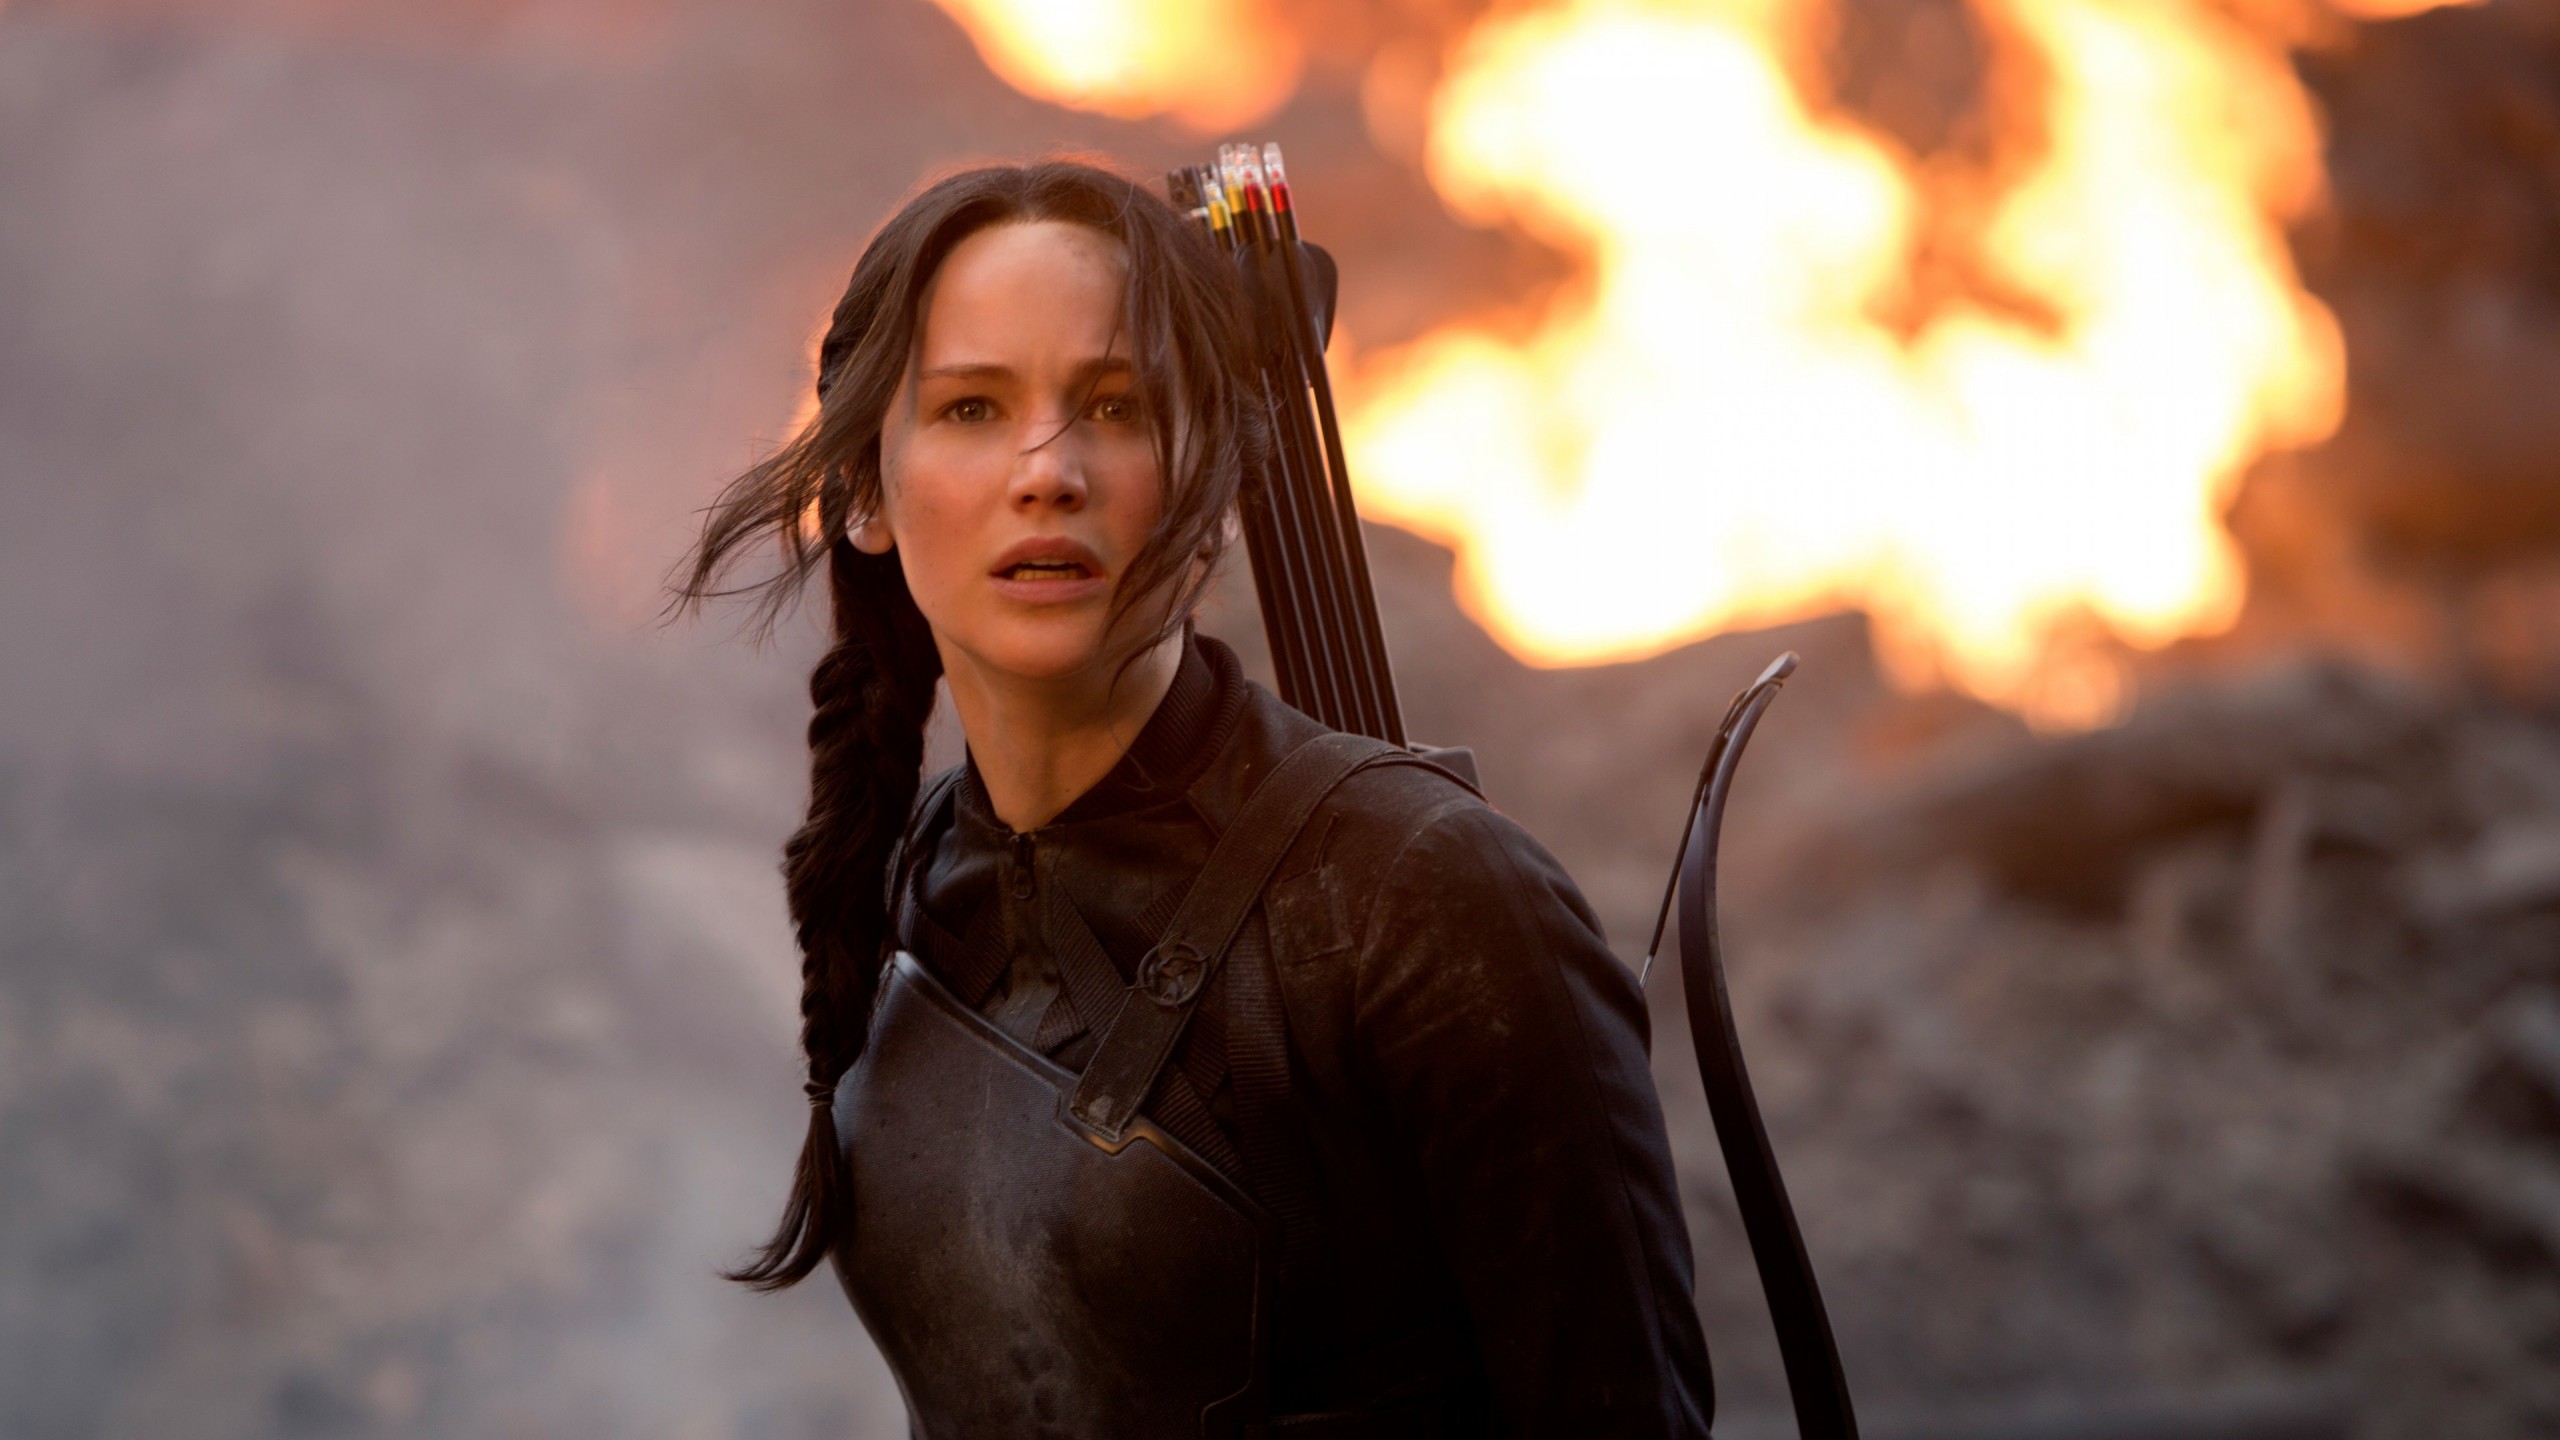 Jennifer Lawrence in The Hunger Games Wallpaper for Social Media YouTube Channel Art